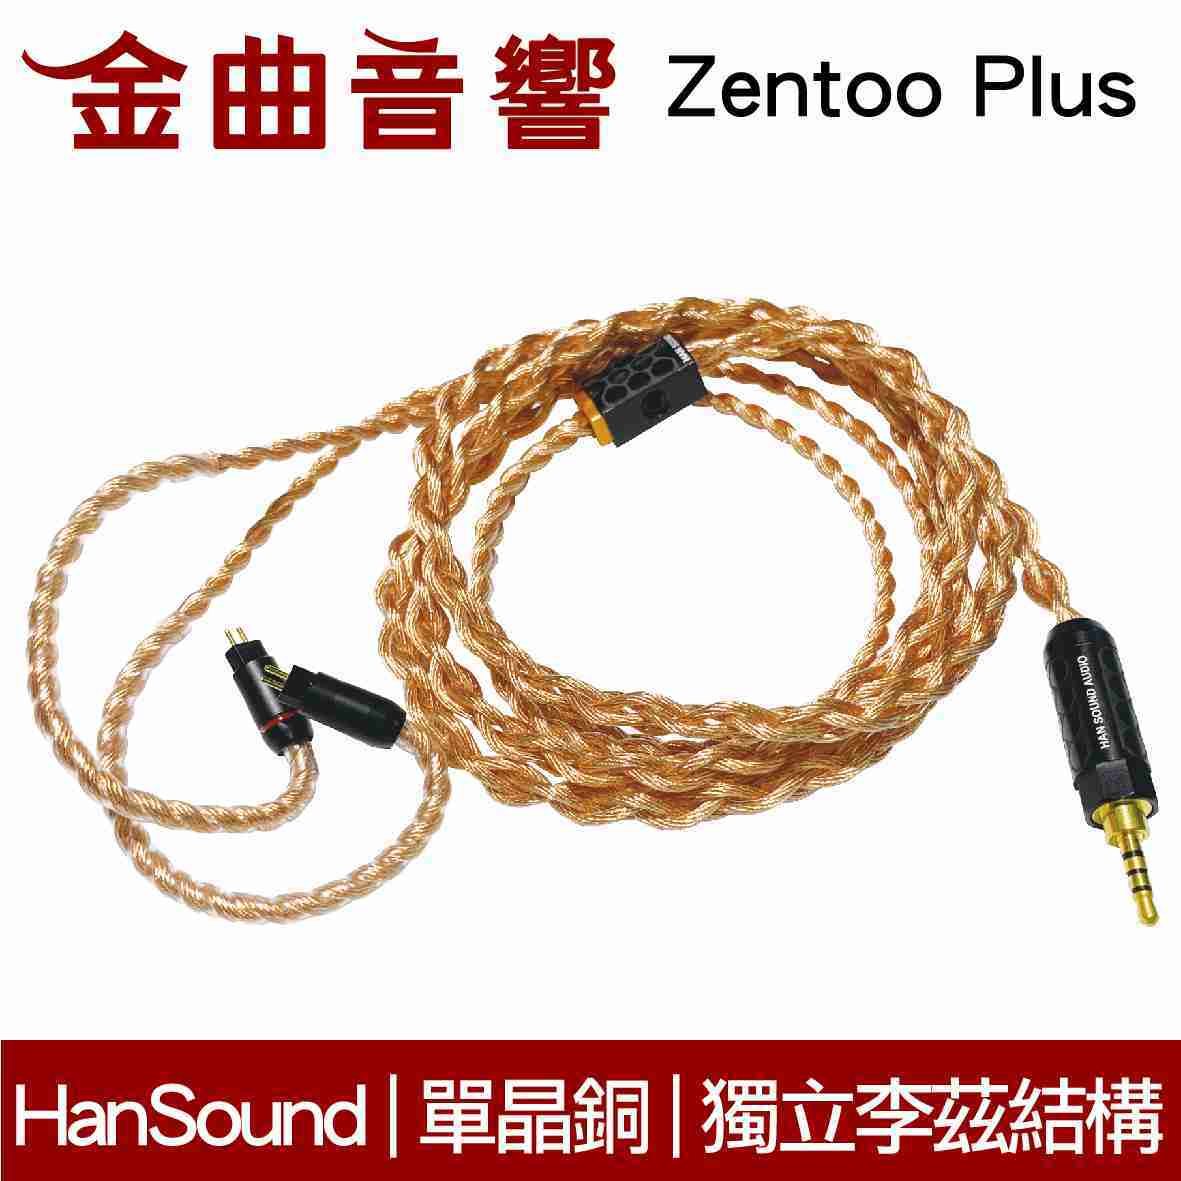 HanSound 漢聲 ZENTOO plus 4.4mm 碳纖維 耳機 升級線 獨立里茲線 | 金曲音響